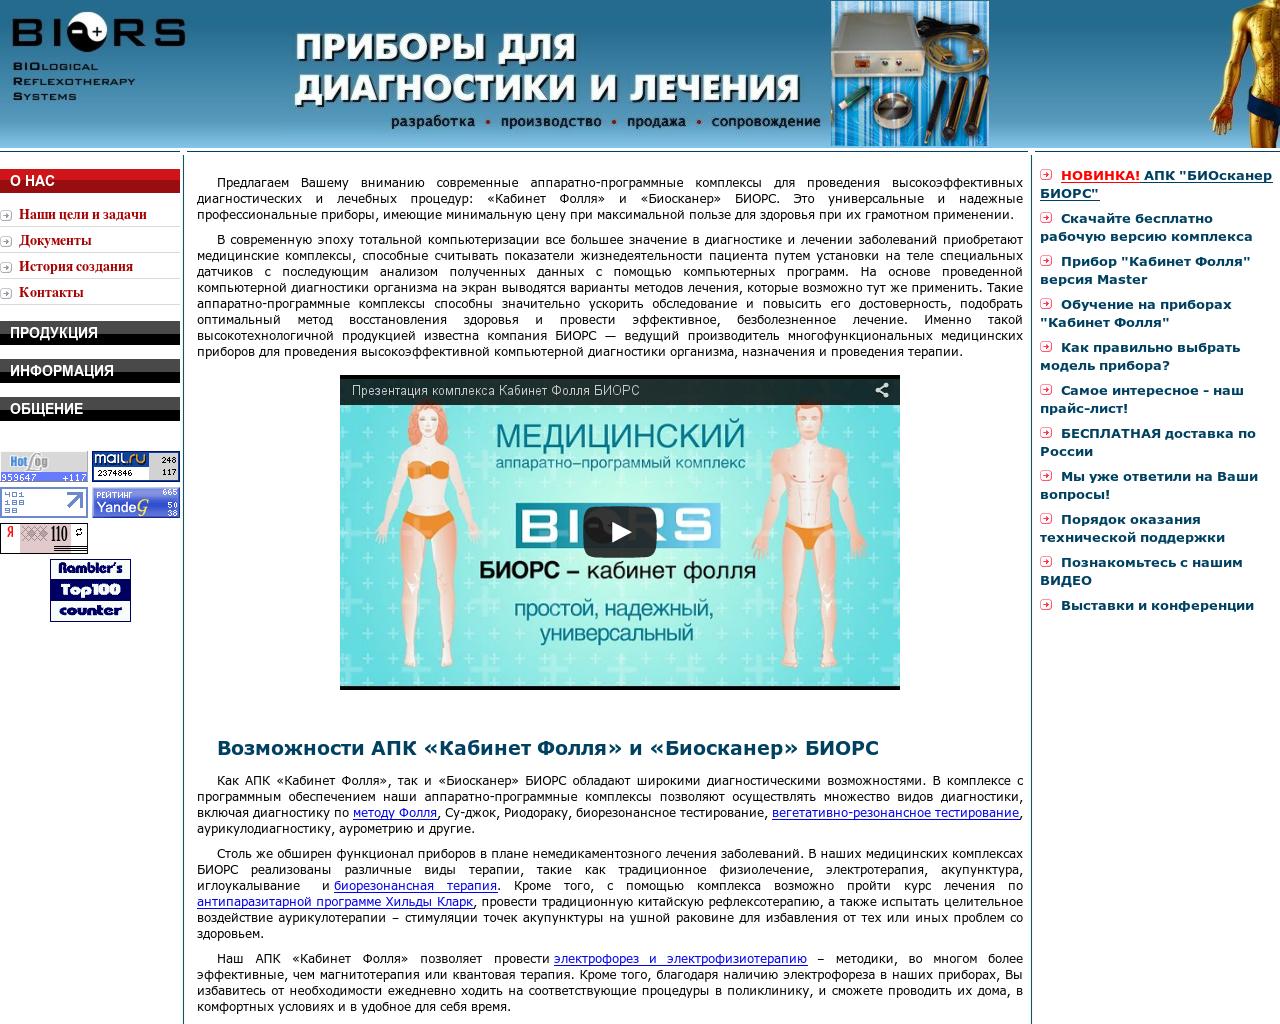 Изображение сайта biors.ru в разрешении 1280x1024